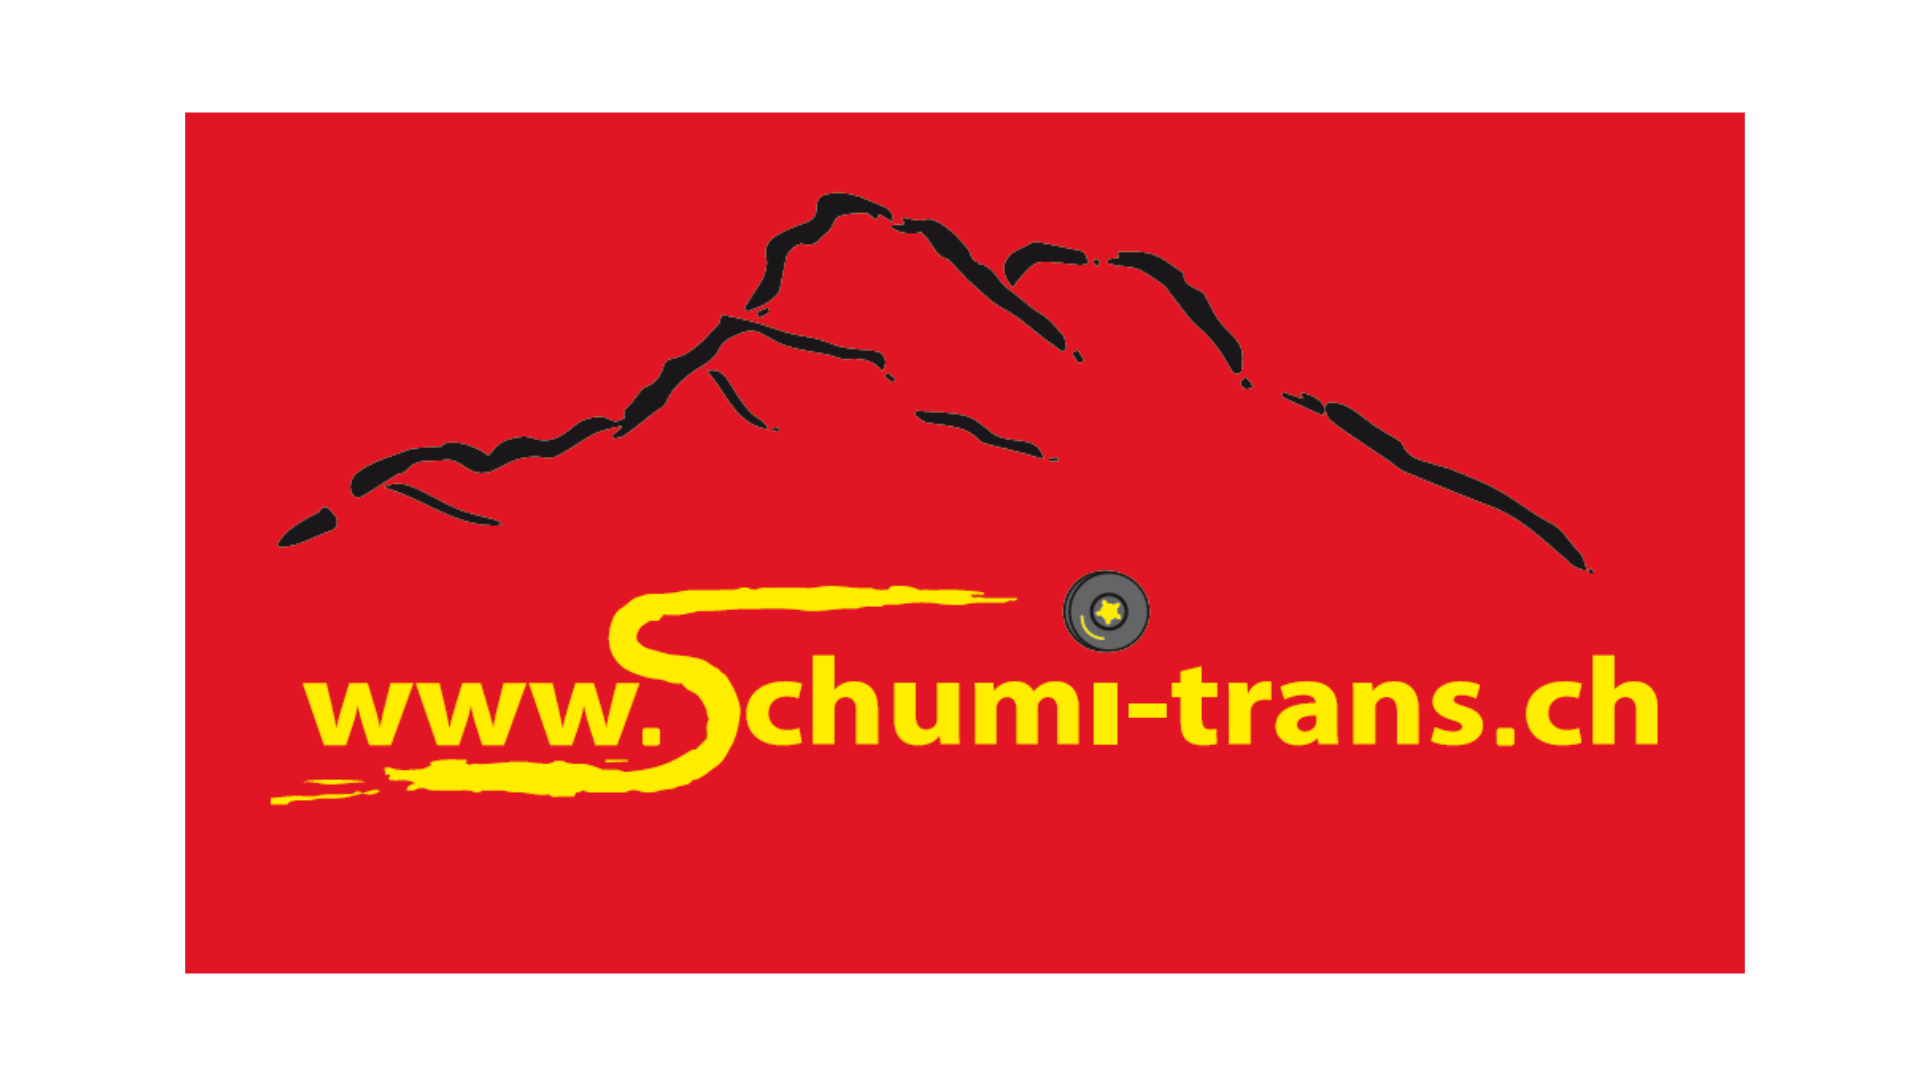 Schumi-trans